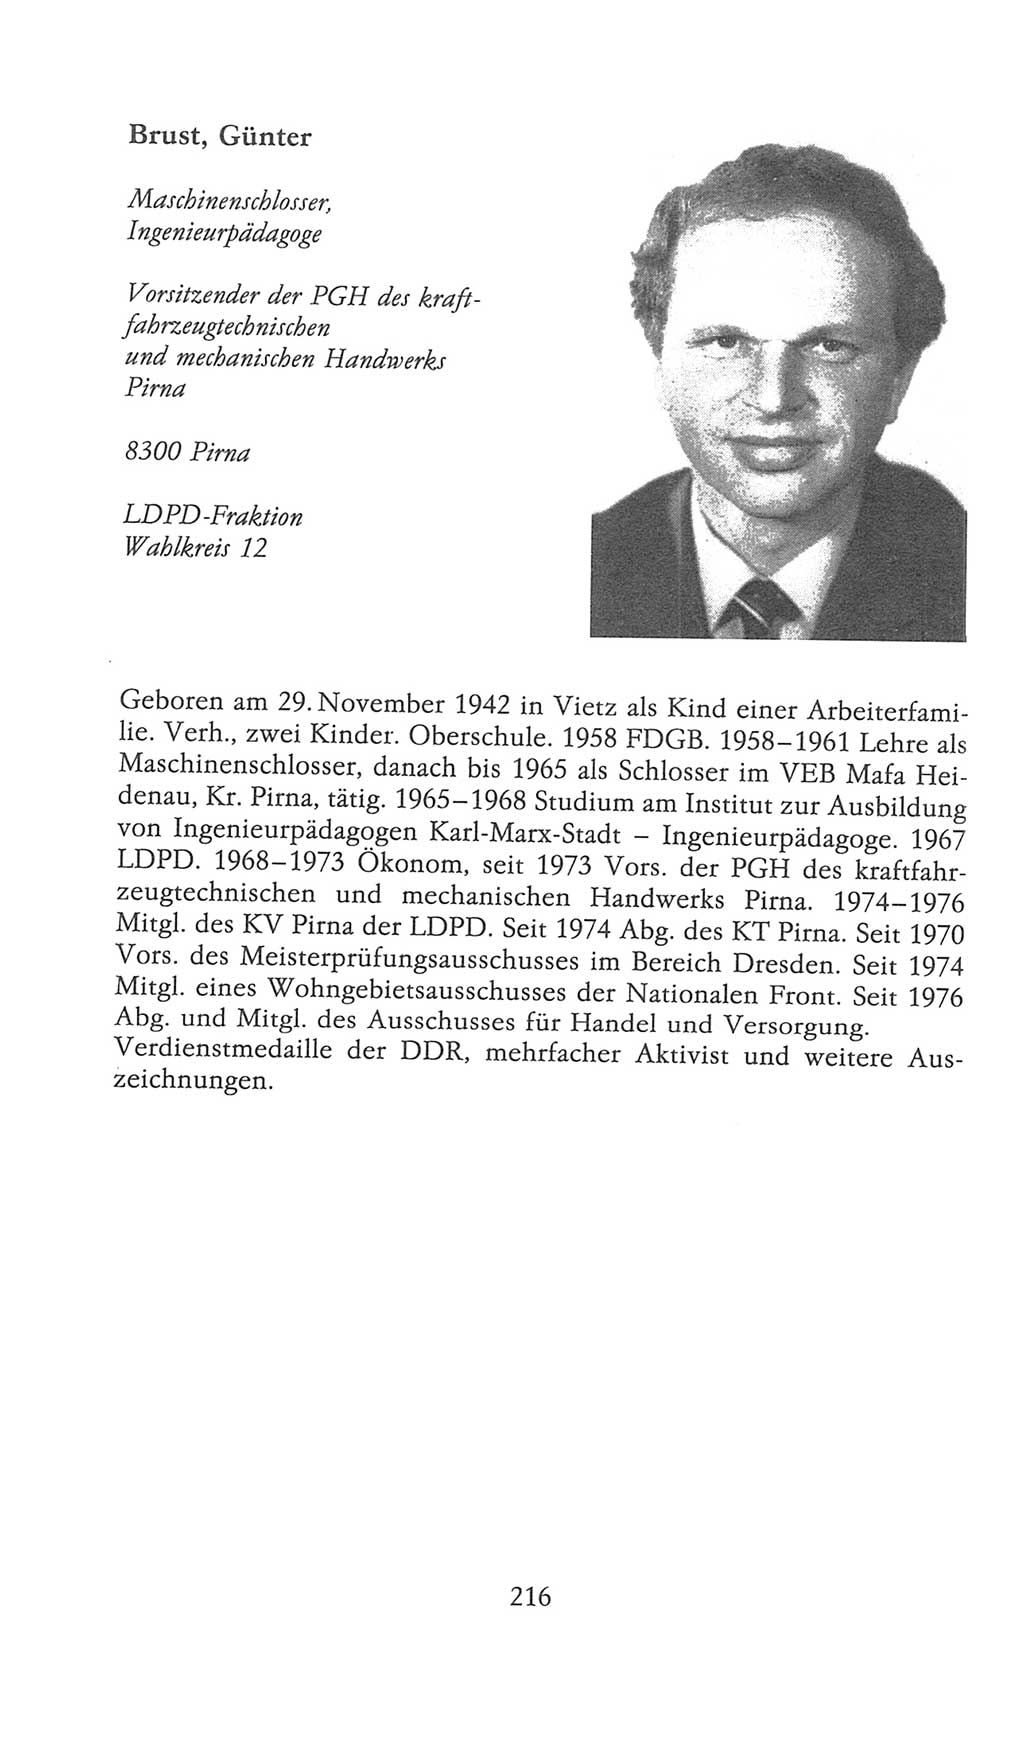 Volkskammer (VK) der Deutschen Demokratischen Republik (DDR), 9. Wahlperiode 1986-1990, Seite 216 (VK. DDR 9. WP. 1986-1990, S. 216)